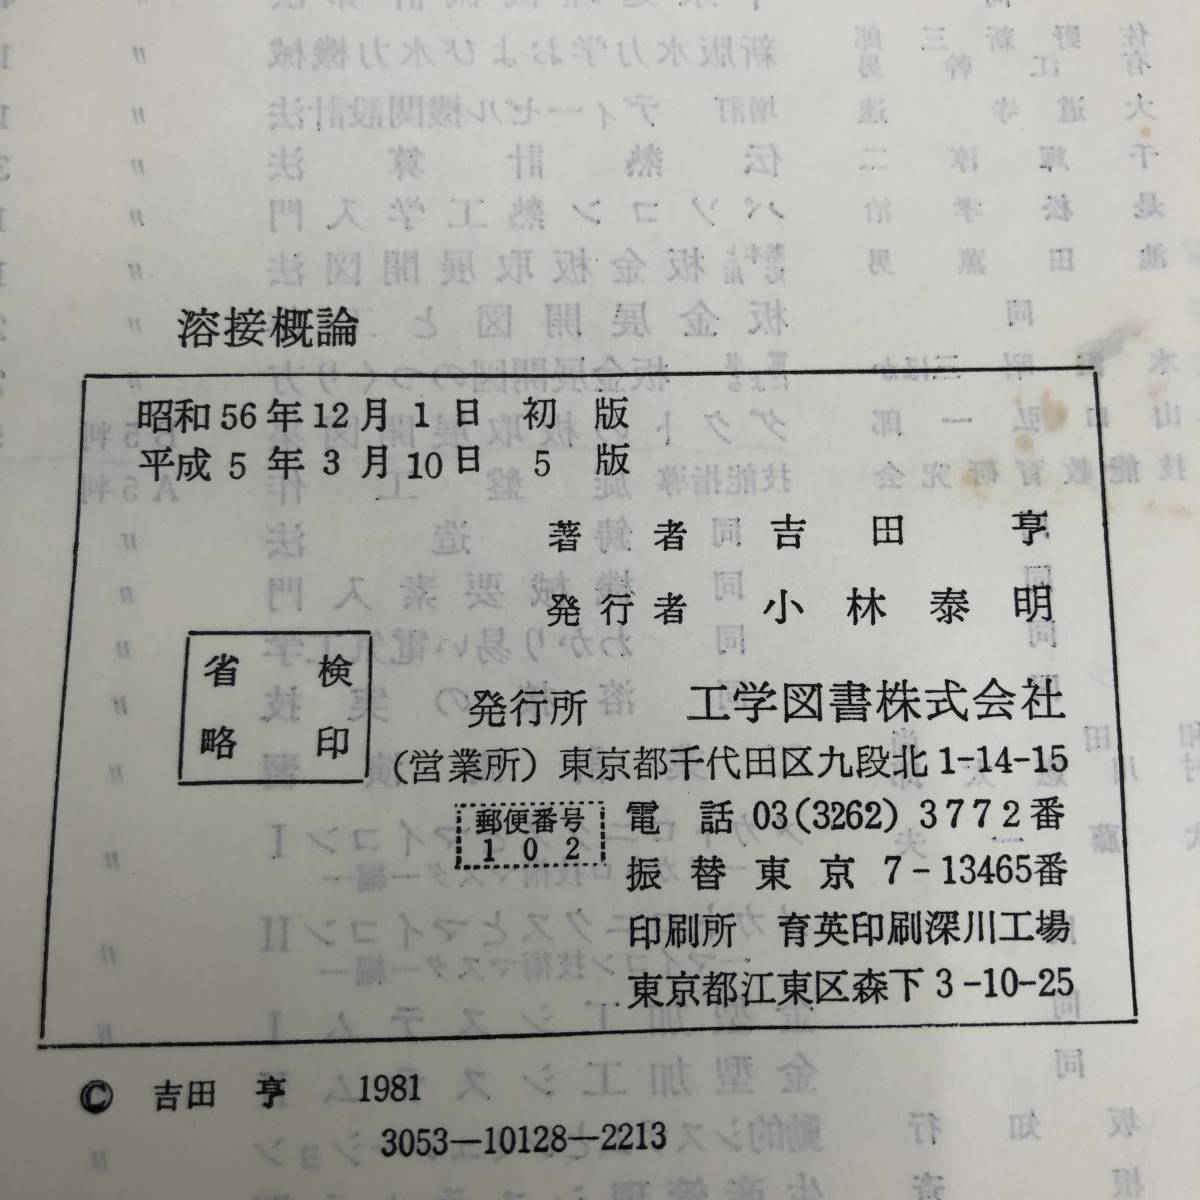 G-6022# welding . theory # Yoshida ./ work # engineering books # Heisei era 5 year 3 month 10 day no. 5 version 